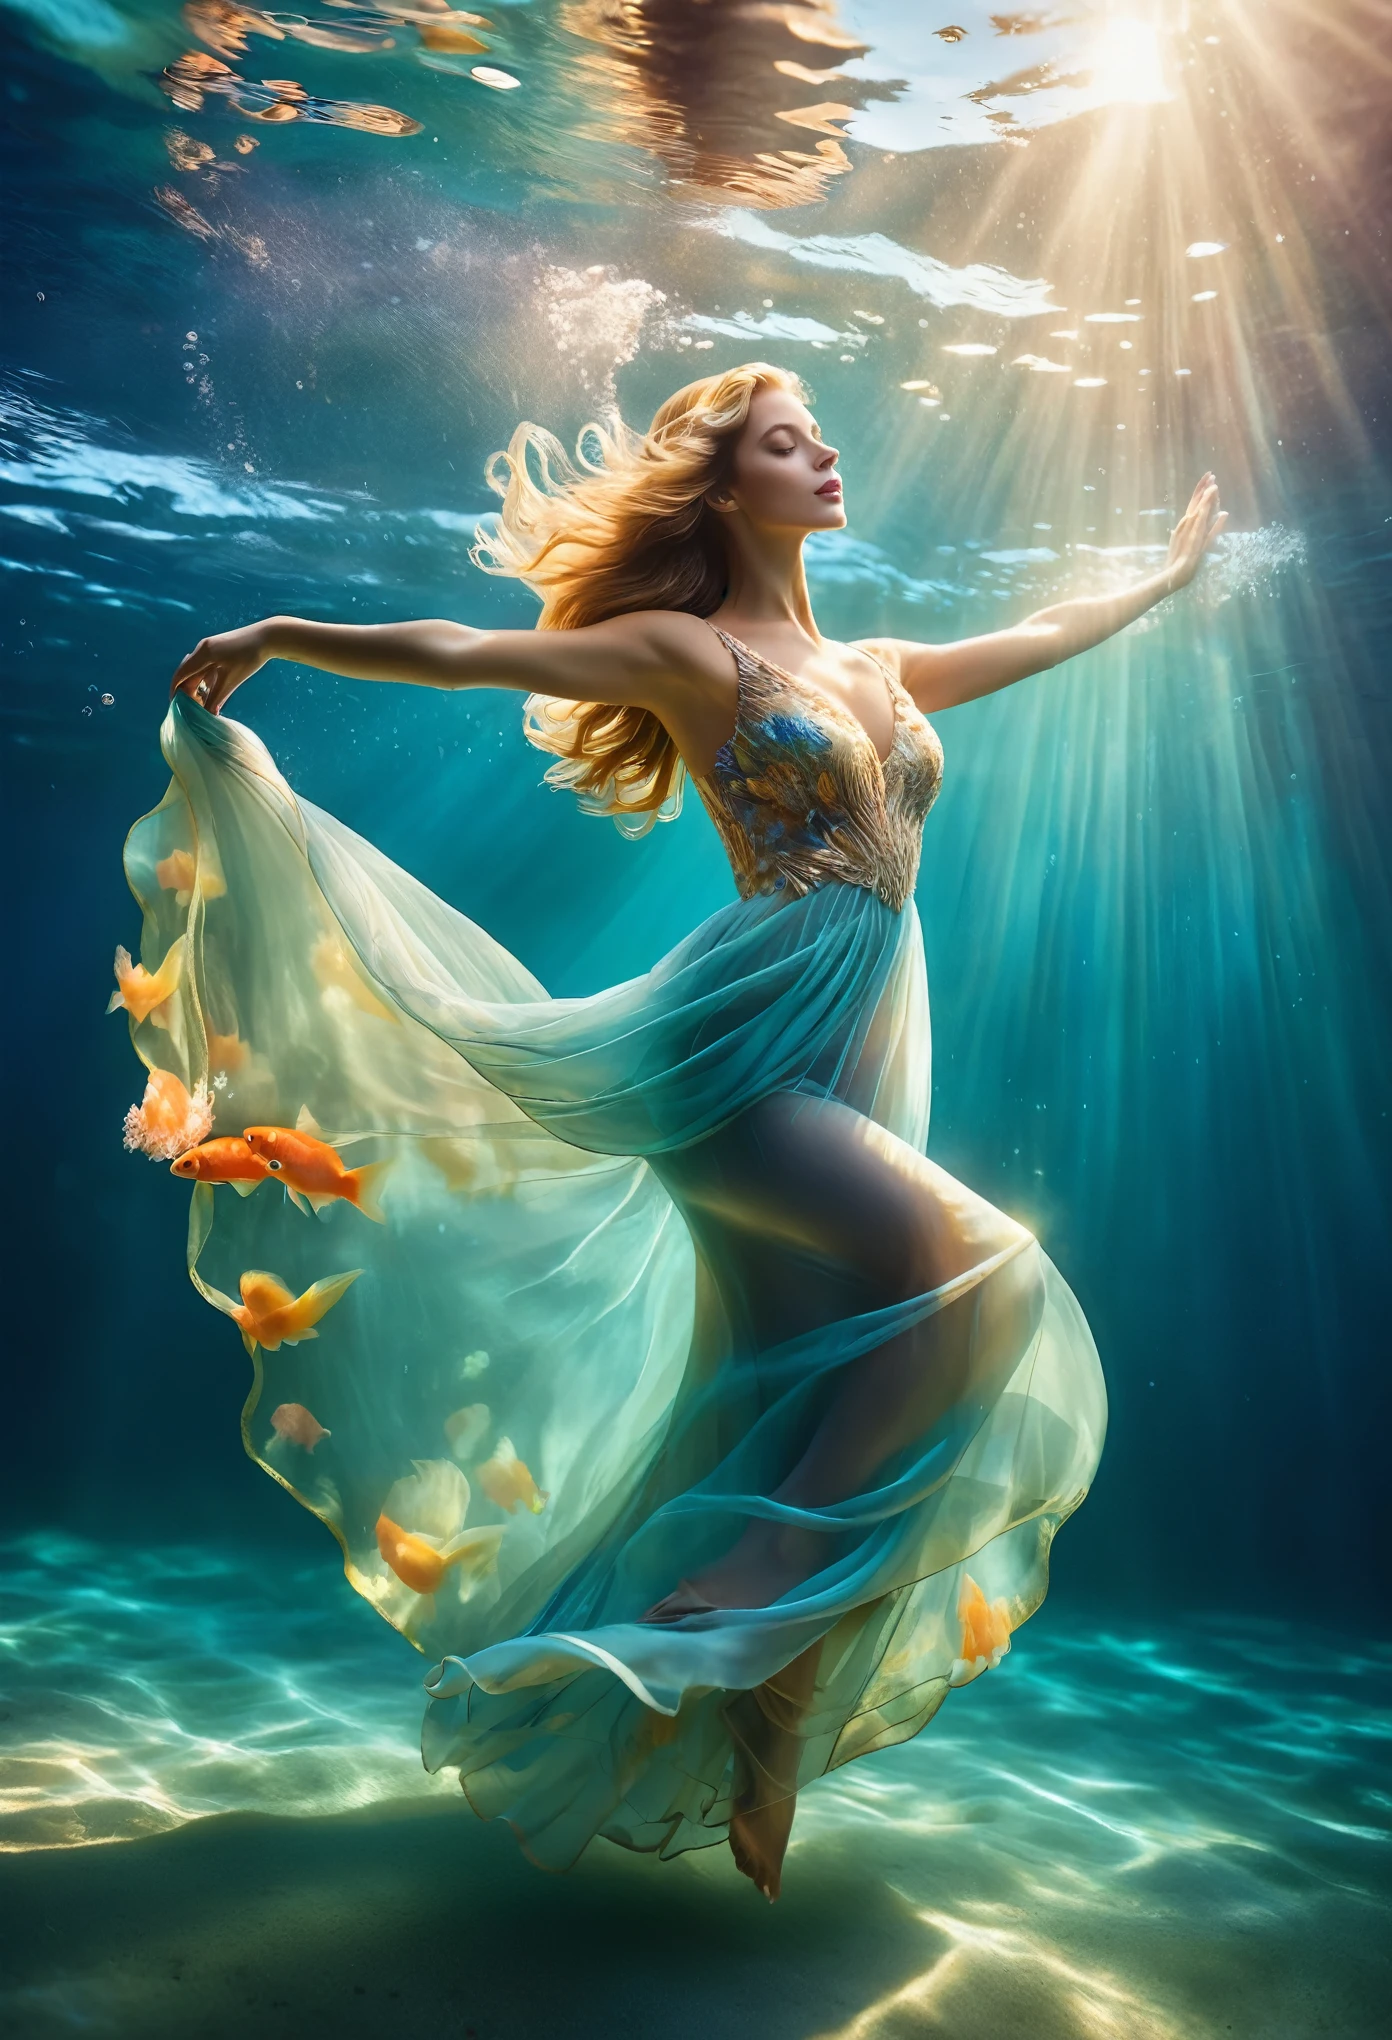 un jour ensoleillé (une charmante femme flottant dans l&#39;eau de mer bleue portant une robe de soirée complète, pièce de tête, avec une taille courbée, gymnastique artistique sous-marine, Photographie sous-marine, ambiance éthérée, éclairage sous-marin élégant, La meilleure qualité, haute résolution, Ultra fin, réalisme photographique: 1.37, Style Shaw, Style Zena Holloway, des couleurs vibrantes dans une palette de rêve, la douce lumière du soleil dorée brille à travers l&#39;eau, créer une lumière céleste. La surface de l&#39;océan est étincelante et luxuriante, et le tissu fluide de la robe de soirée se retourne gracieusement dans l&#39;eau.. Le regard charmant de la femme, Des yeux charmants et expressifs, et les cheveux longs coulent doucement Le sol flotte dans l&#39;eau, créant une atmosphère magique et en apesanteur, avec des notes subtiles de créatures marines telles que des poissons colorés ou des coraux délicats, Capturer la tranquillité et la tranquillité suspendues dans l&#39;eau, Élégance et sophistication mêlées à la beauté naturelle de l&#39;océan, Les femmes respirent l’élégance et la confiance, se fondant sans effort dans le milieu aquatique.